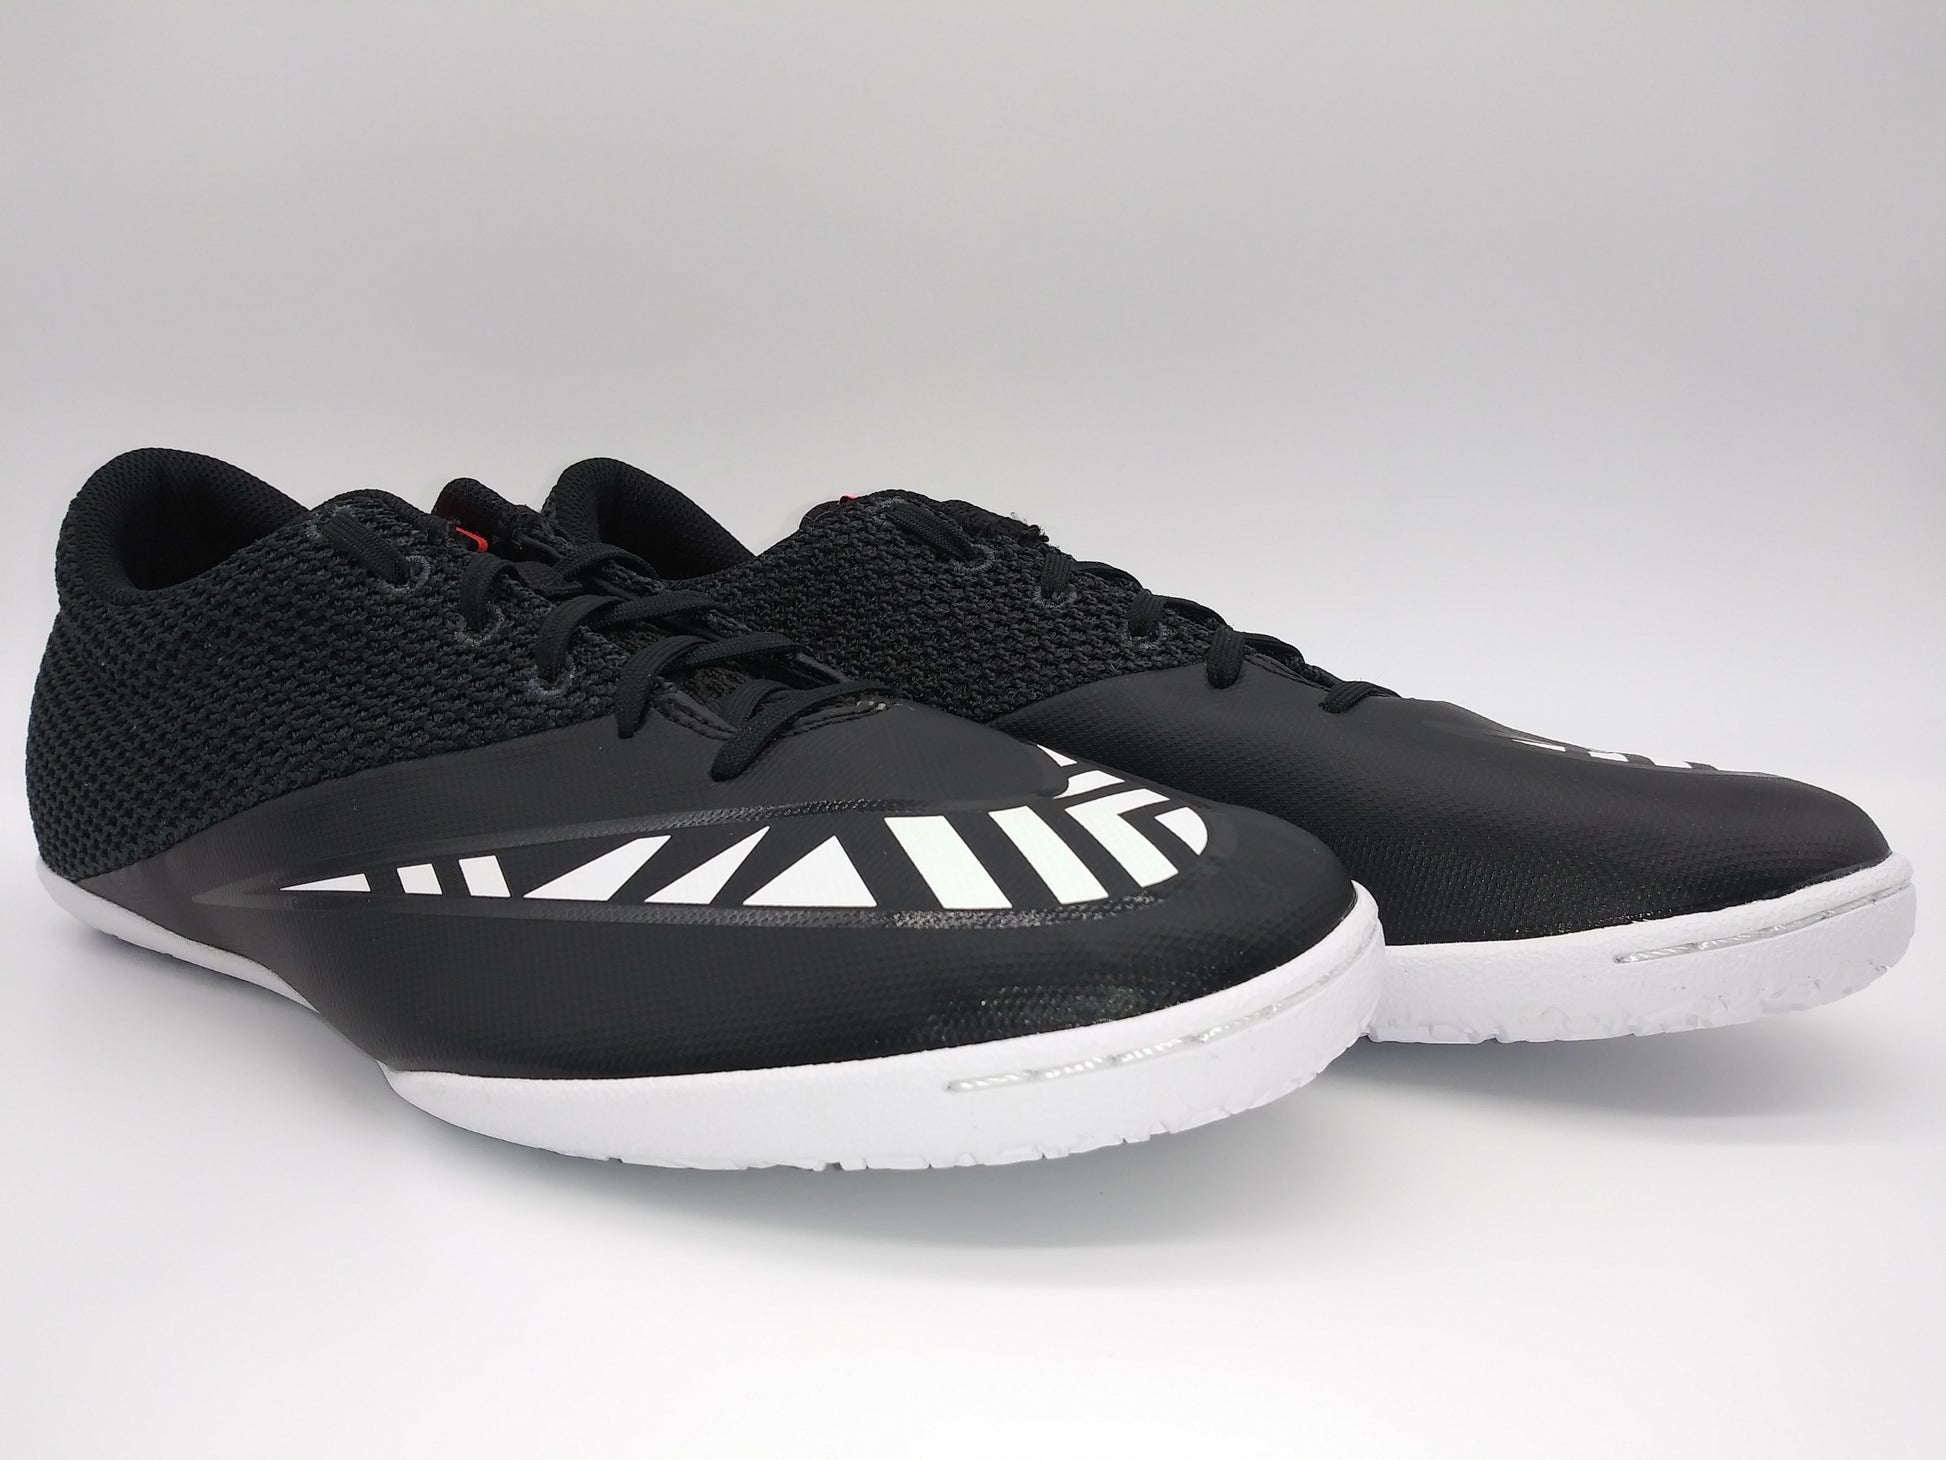 MercurialX Street IC Black White – Villegas Footwear